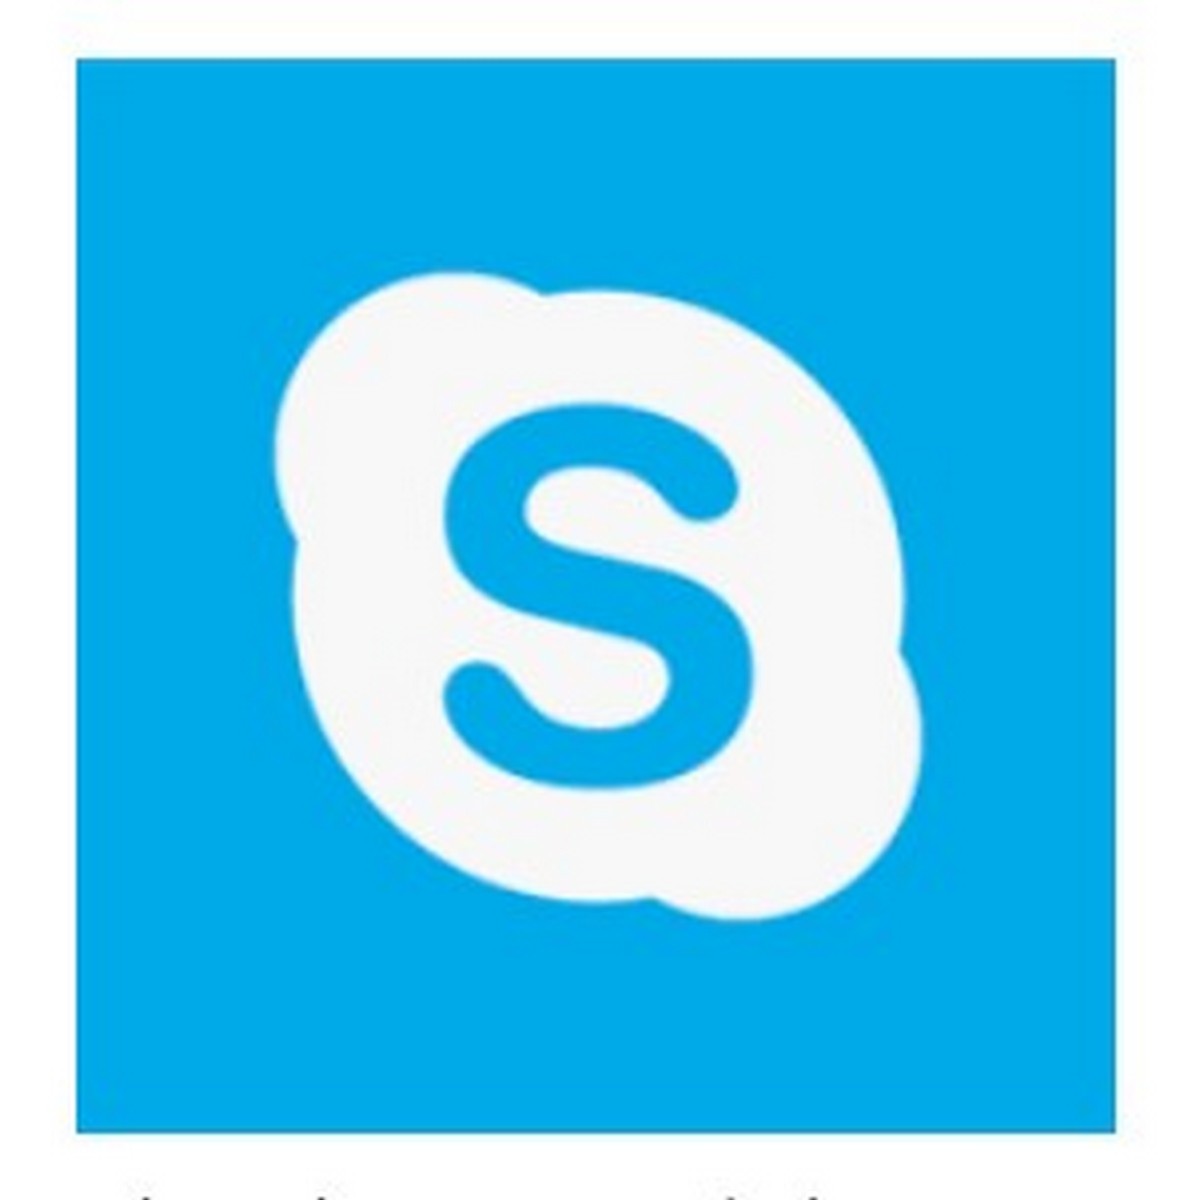 skype for mac free download